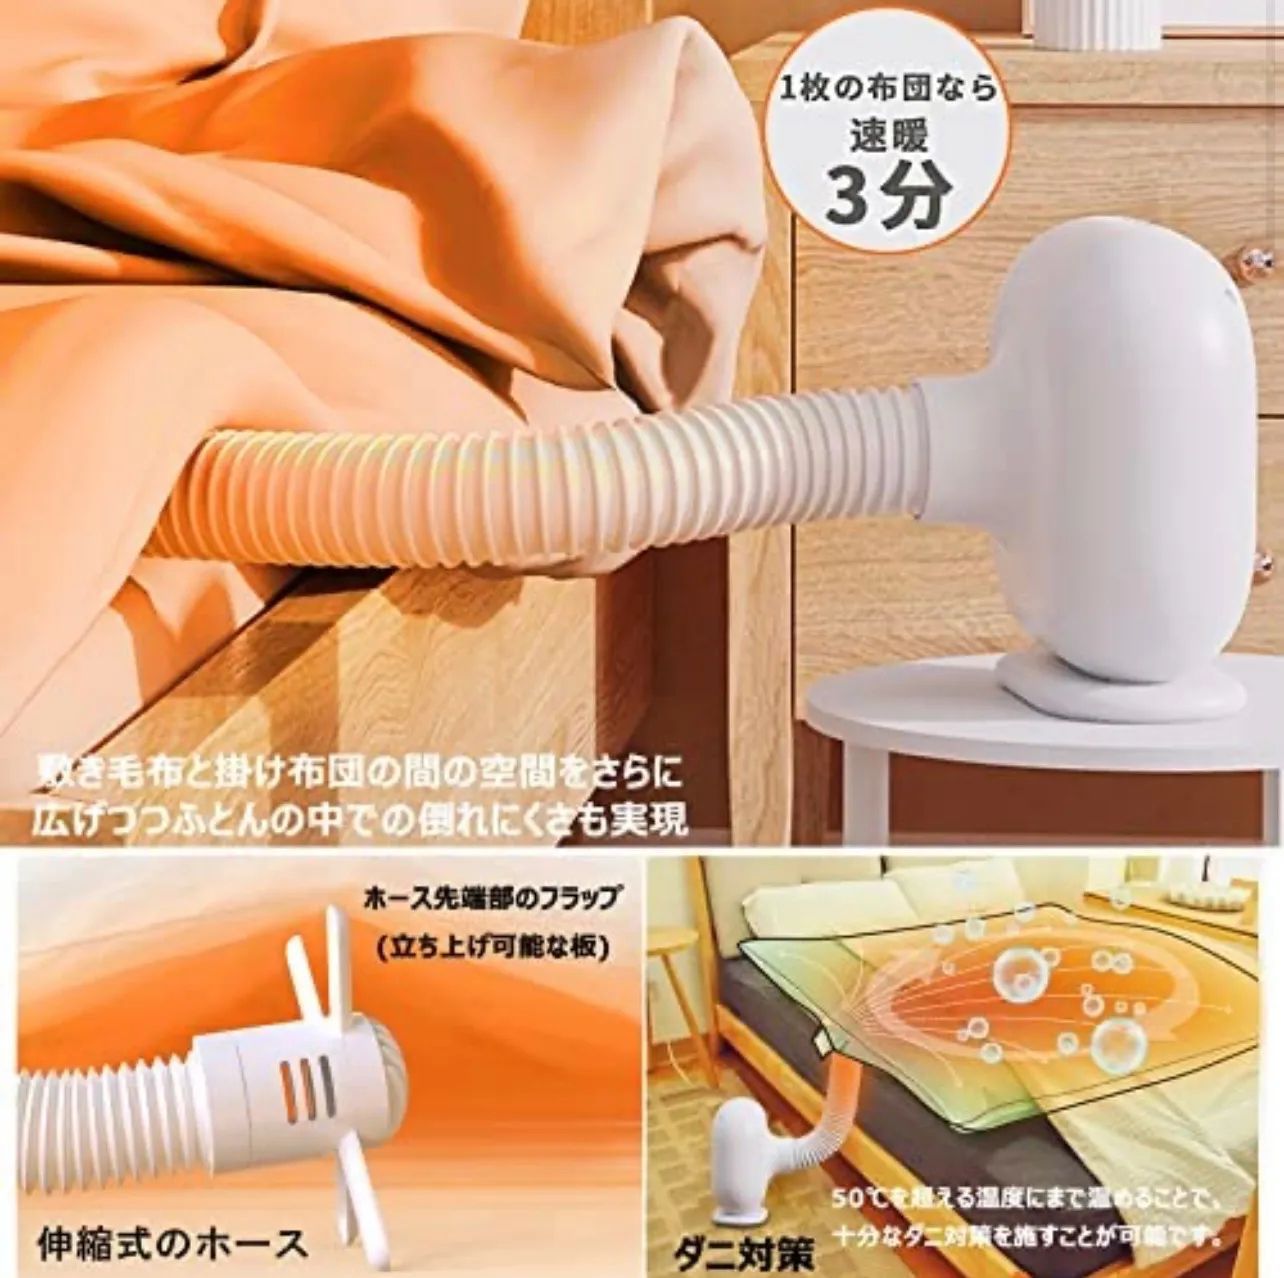 【新品未開封品】布団乾燥機 セラミックヒーター 速暖